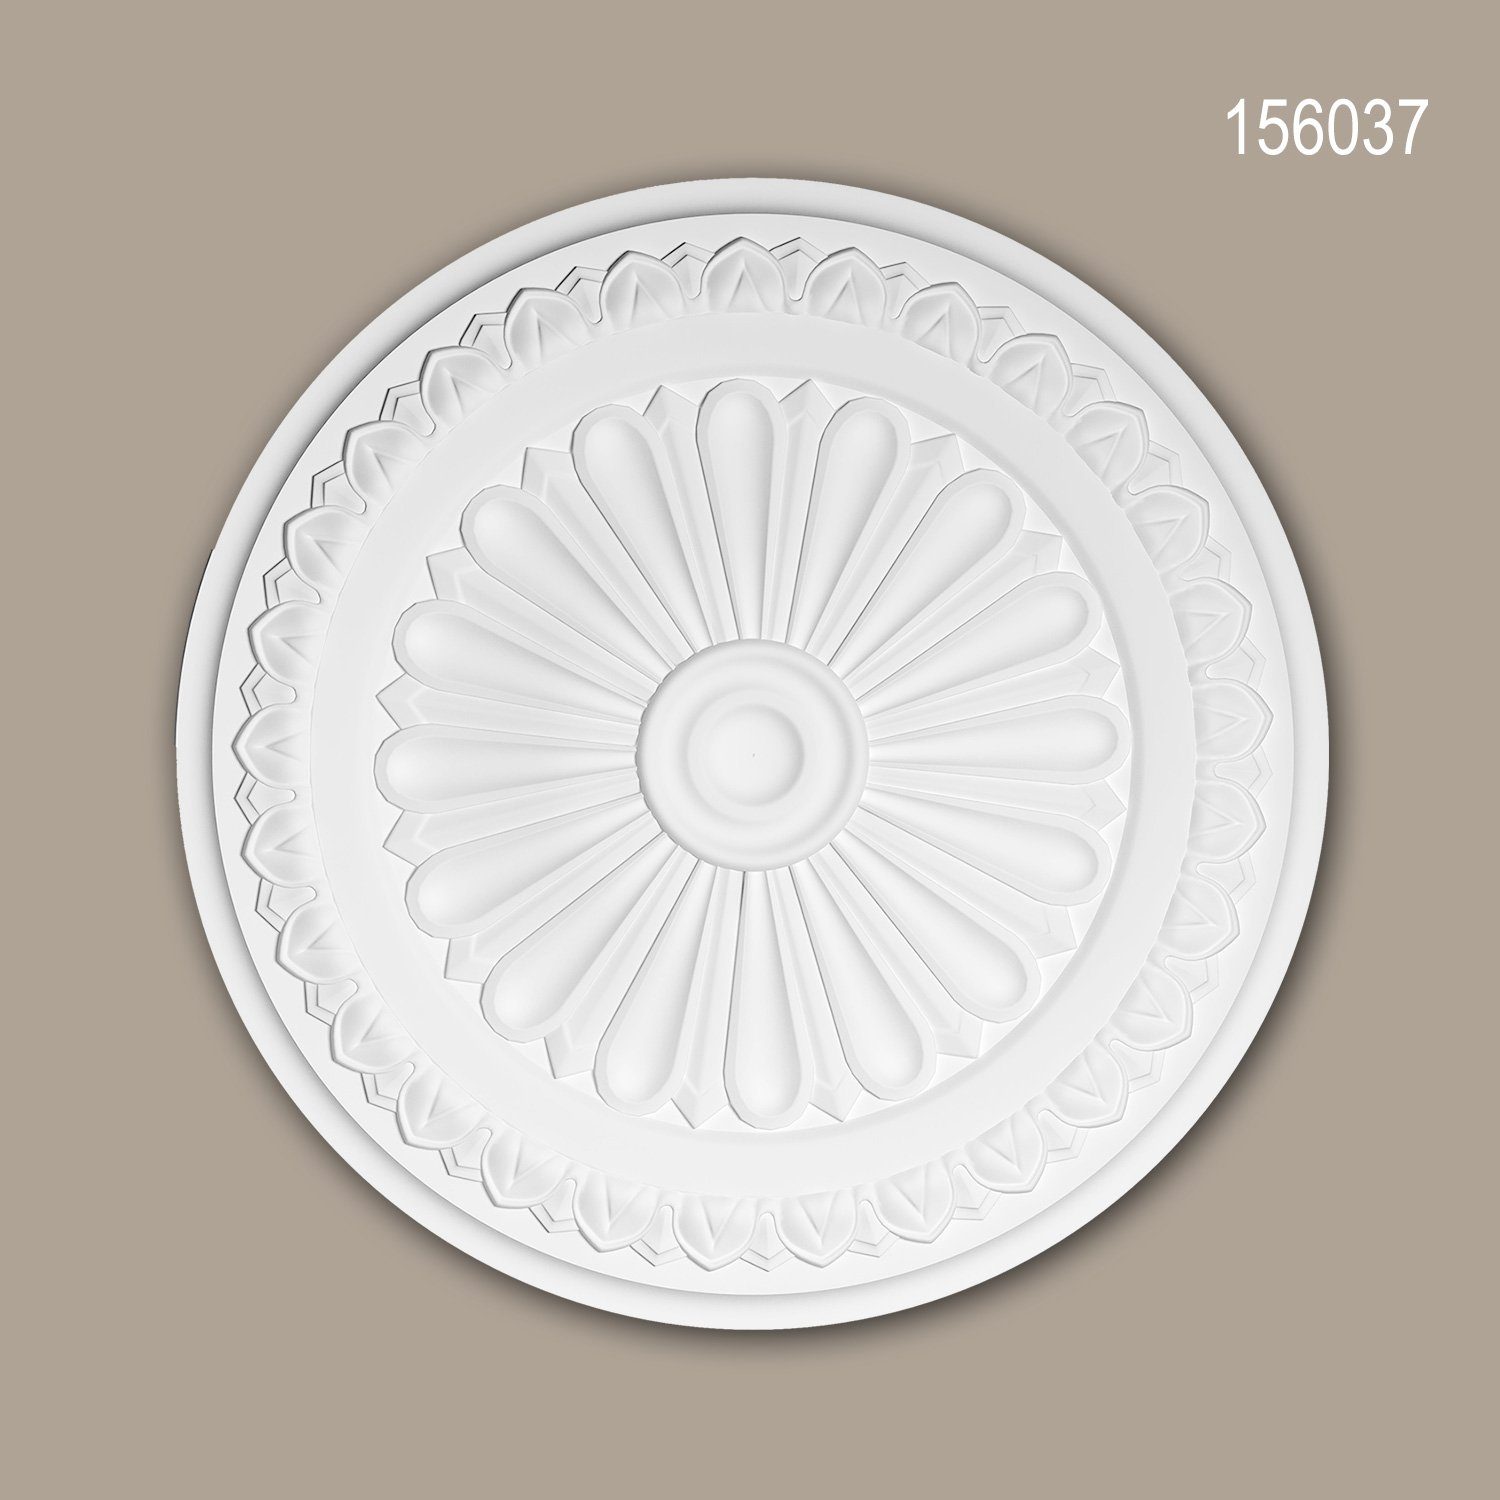 Profhome Decken-Rosette 156037 (Rosette, 1 St., Deckenrosette, Medallion, Stuckrosette, Deckenelement, Zierelement, Durchmesser 33 cm), weiß, vorgrundiert, Stil: Neo-Klassizismus